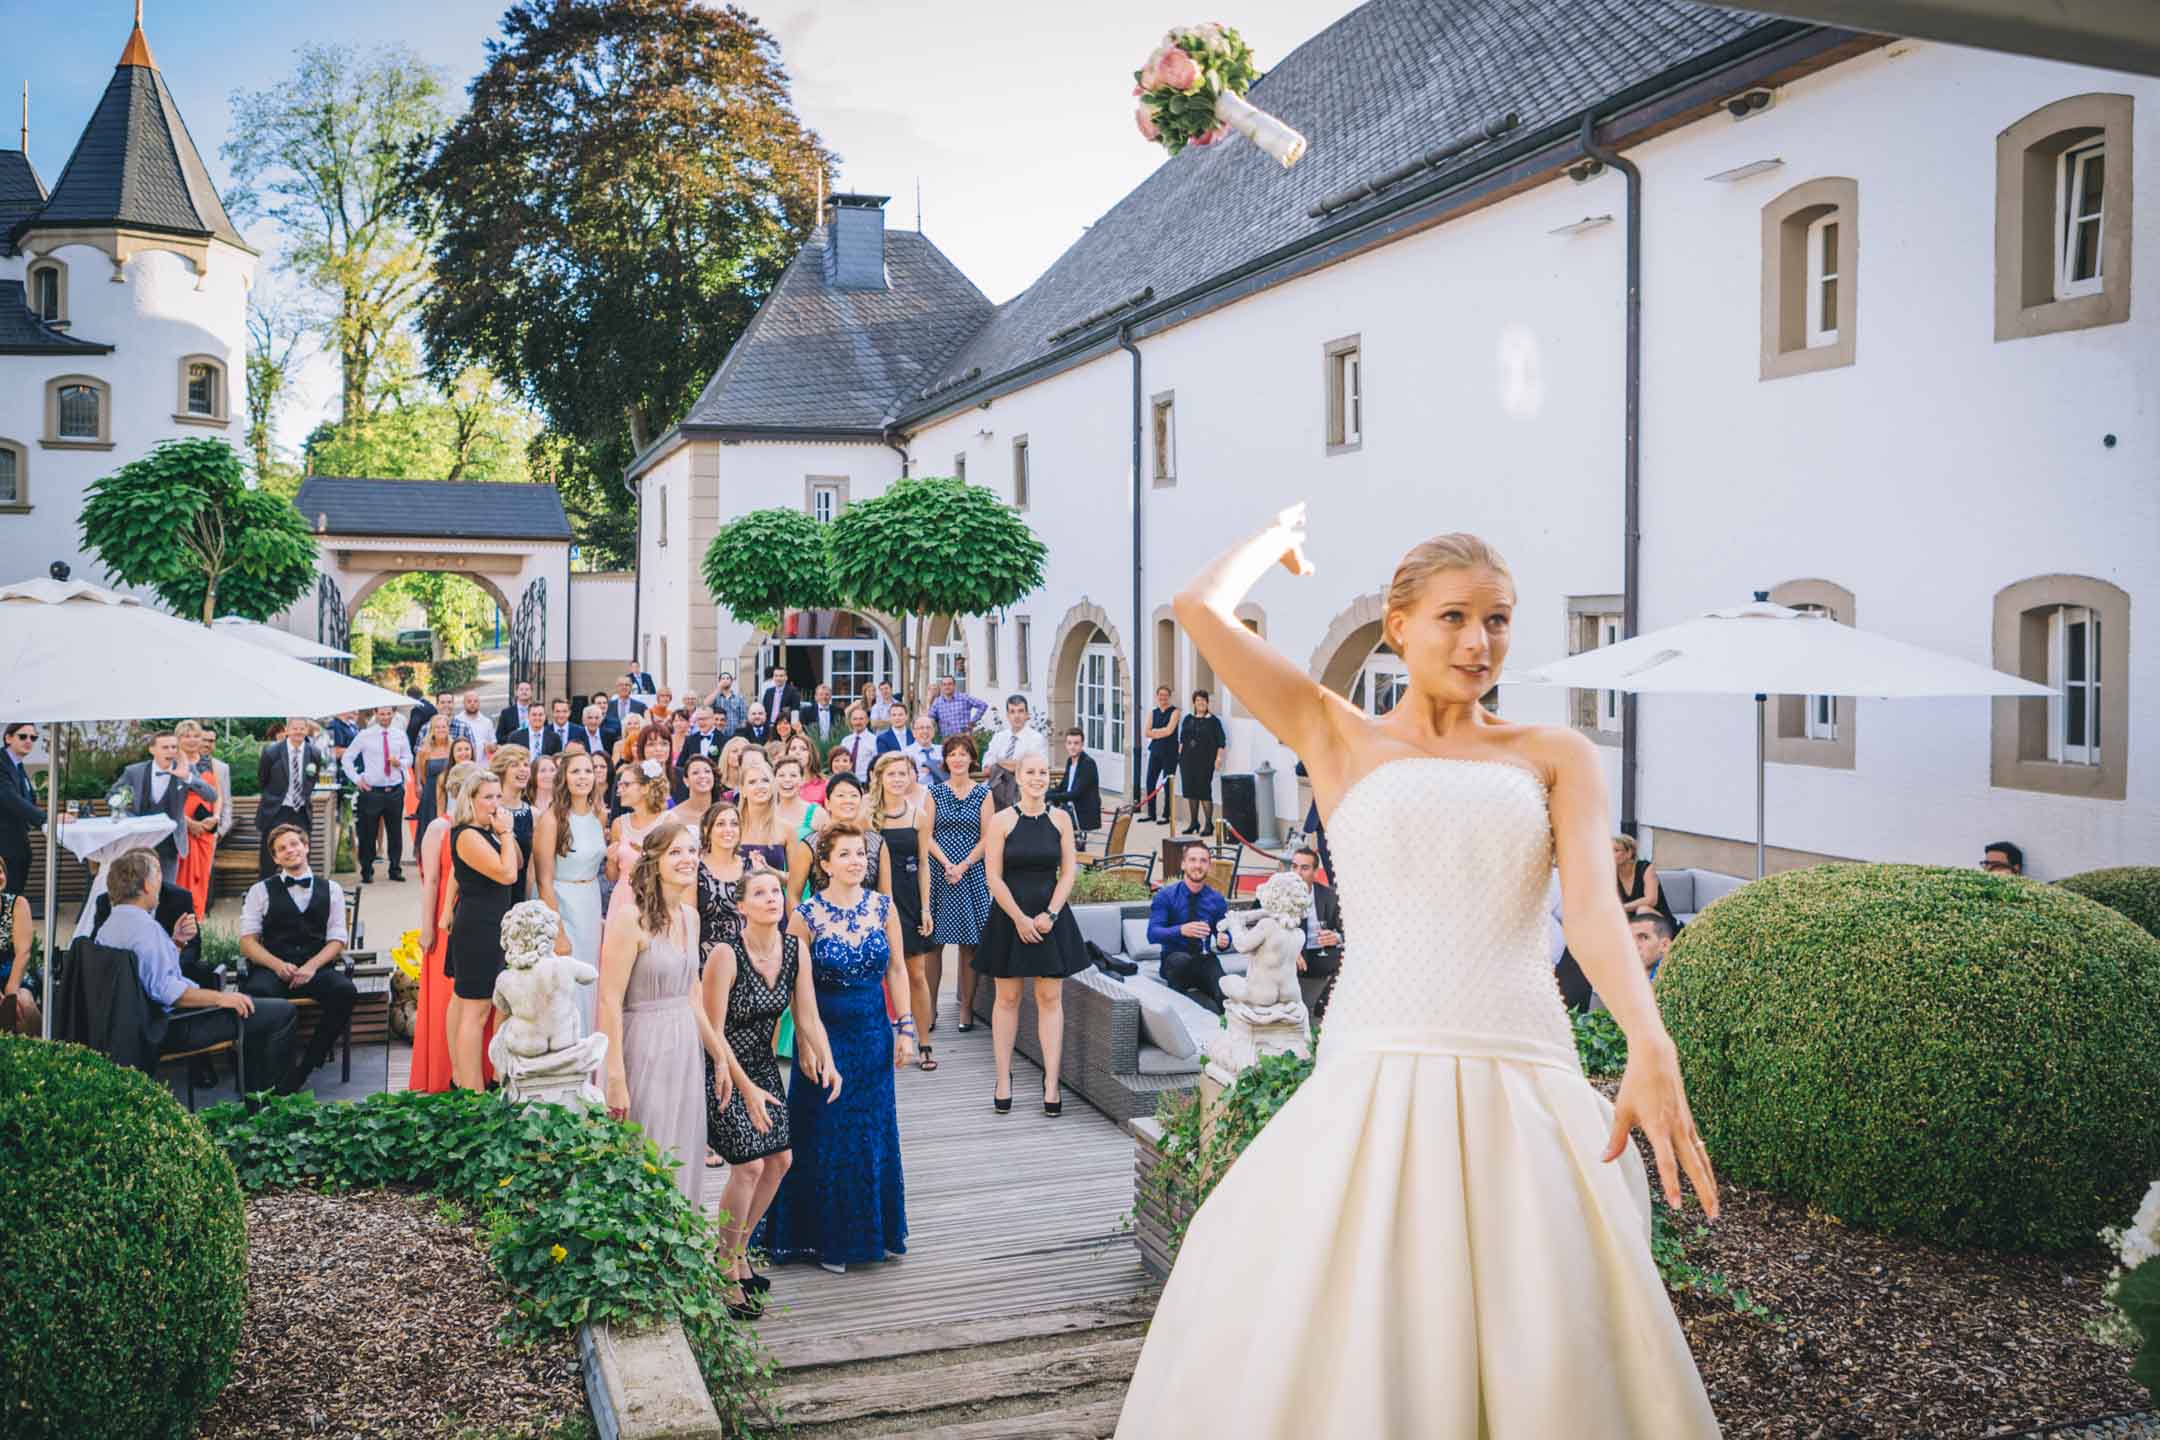 La mariée qui lance son bouquet aux demoiselles d'honneur, Chateau d'Urspelt, Luxembourg